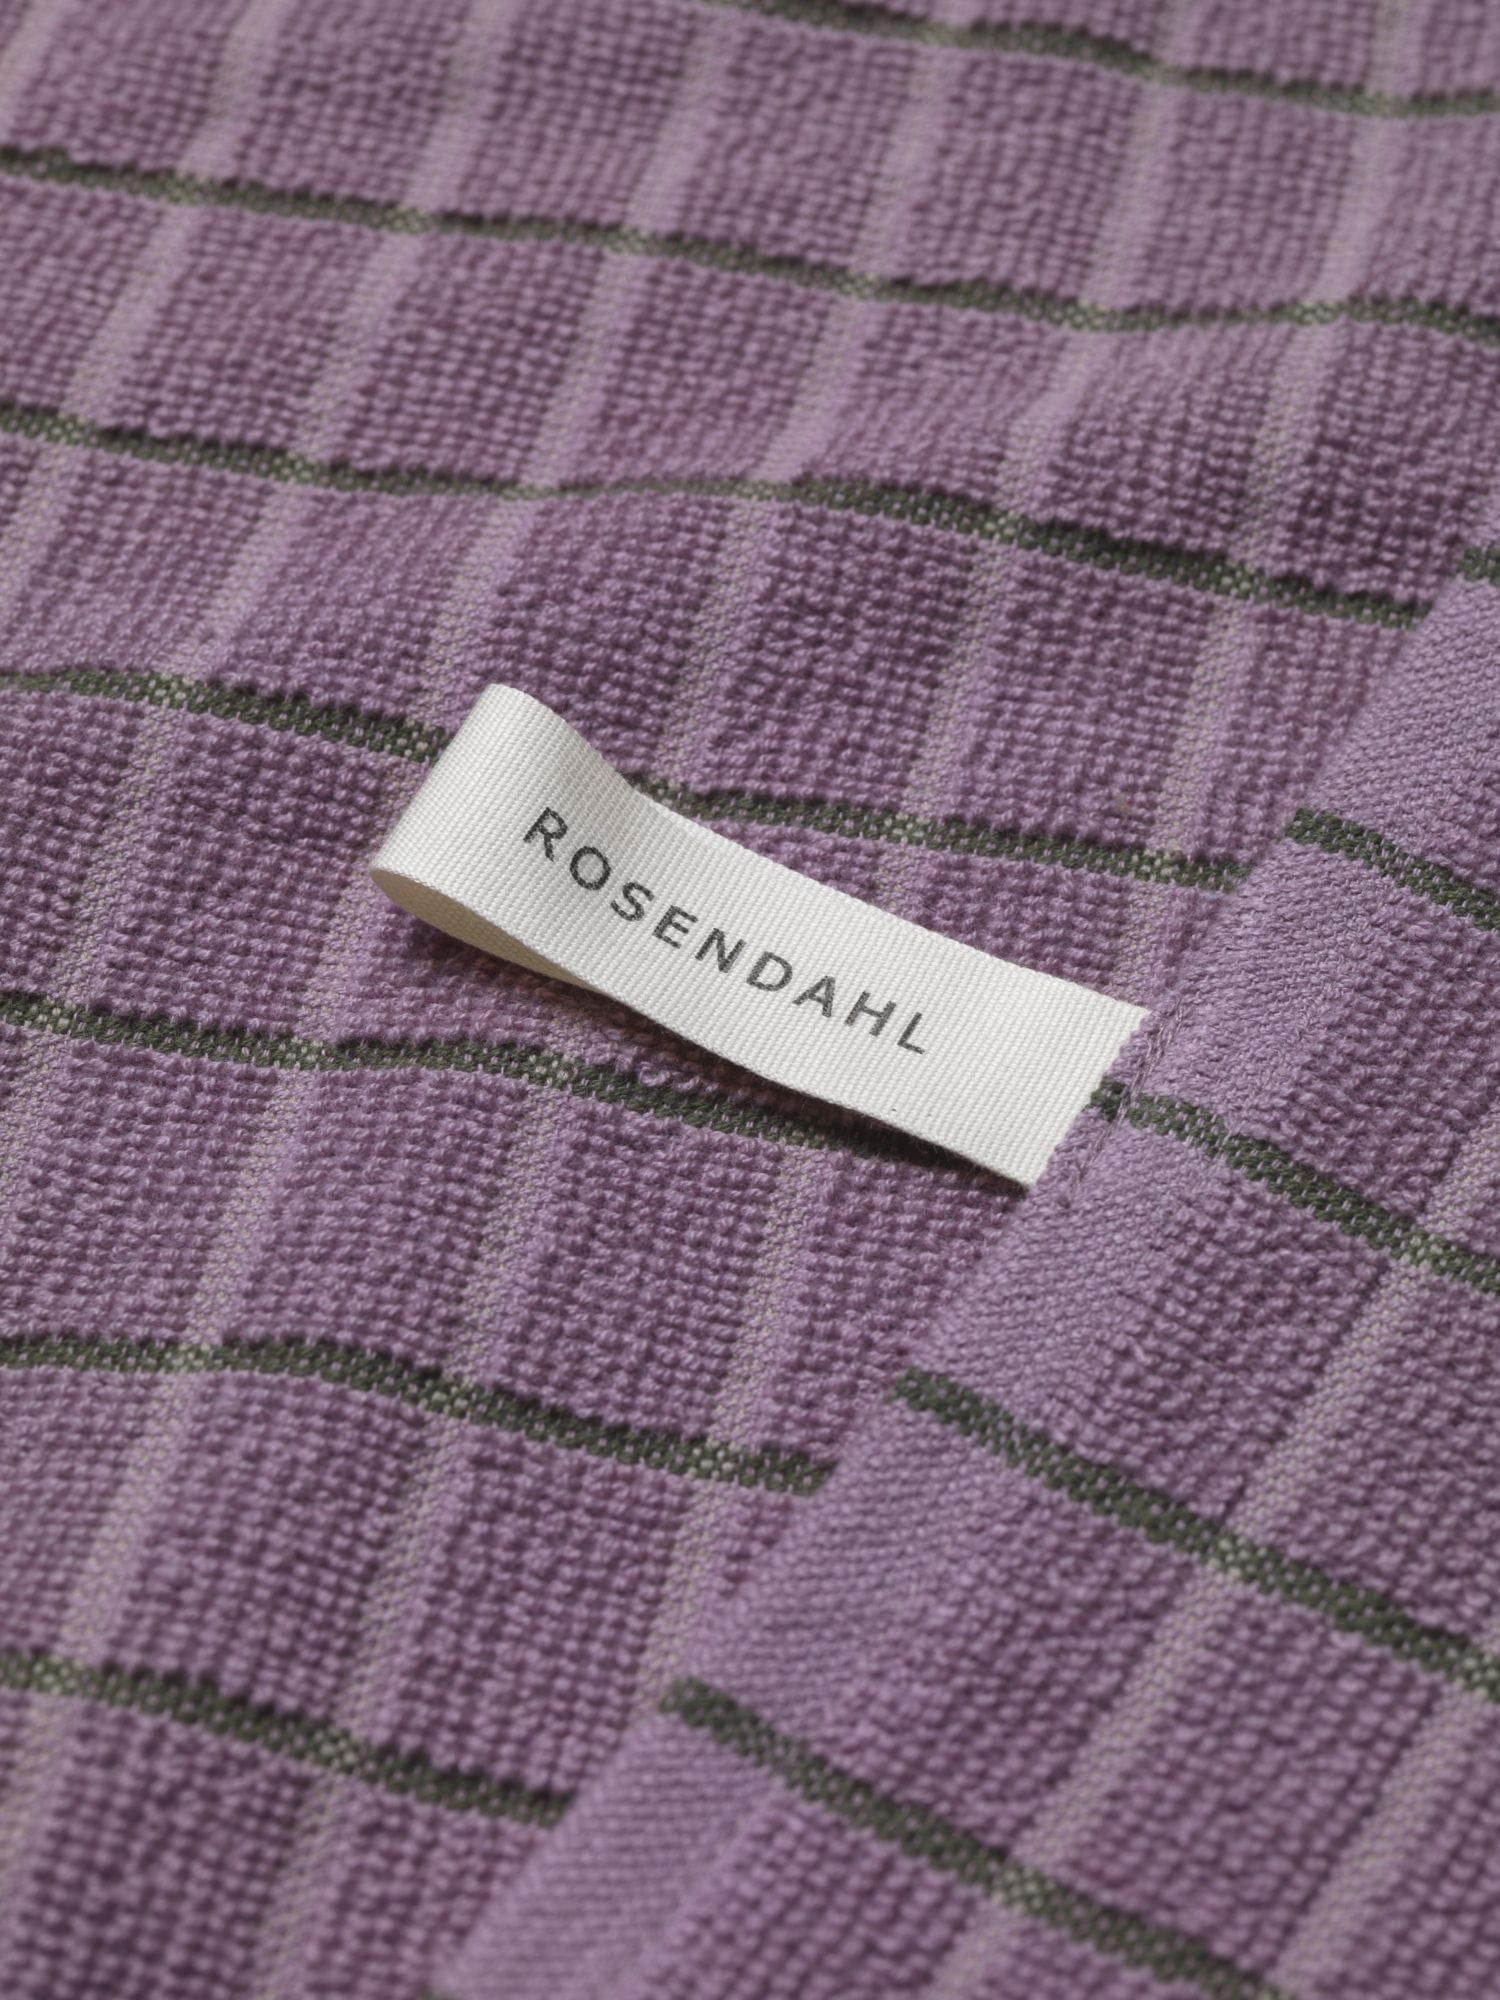 Rosendahl Rosendahl Textilien Terry Geschirrtuch 50x70 cm, lila